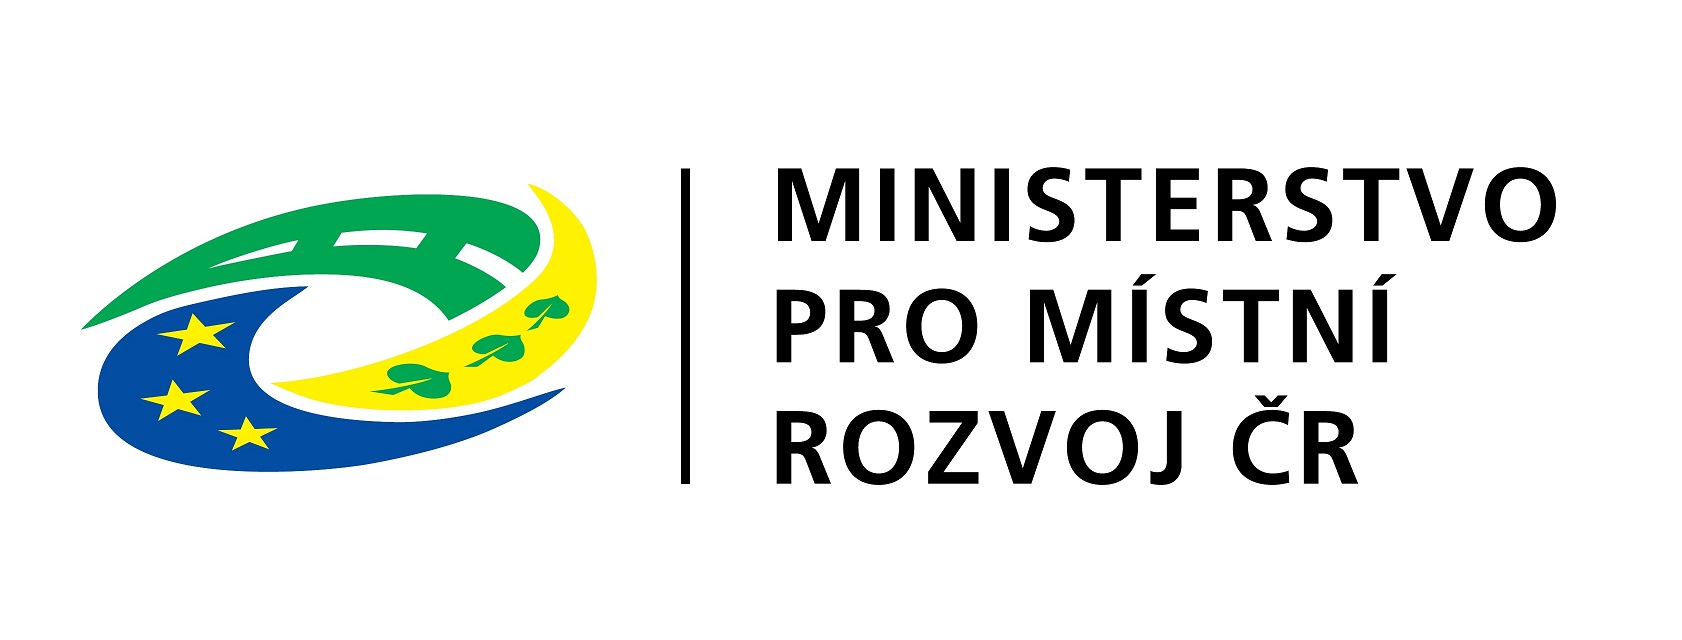 MMR logo 2